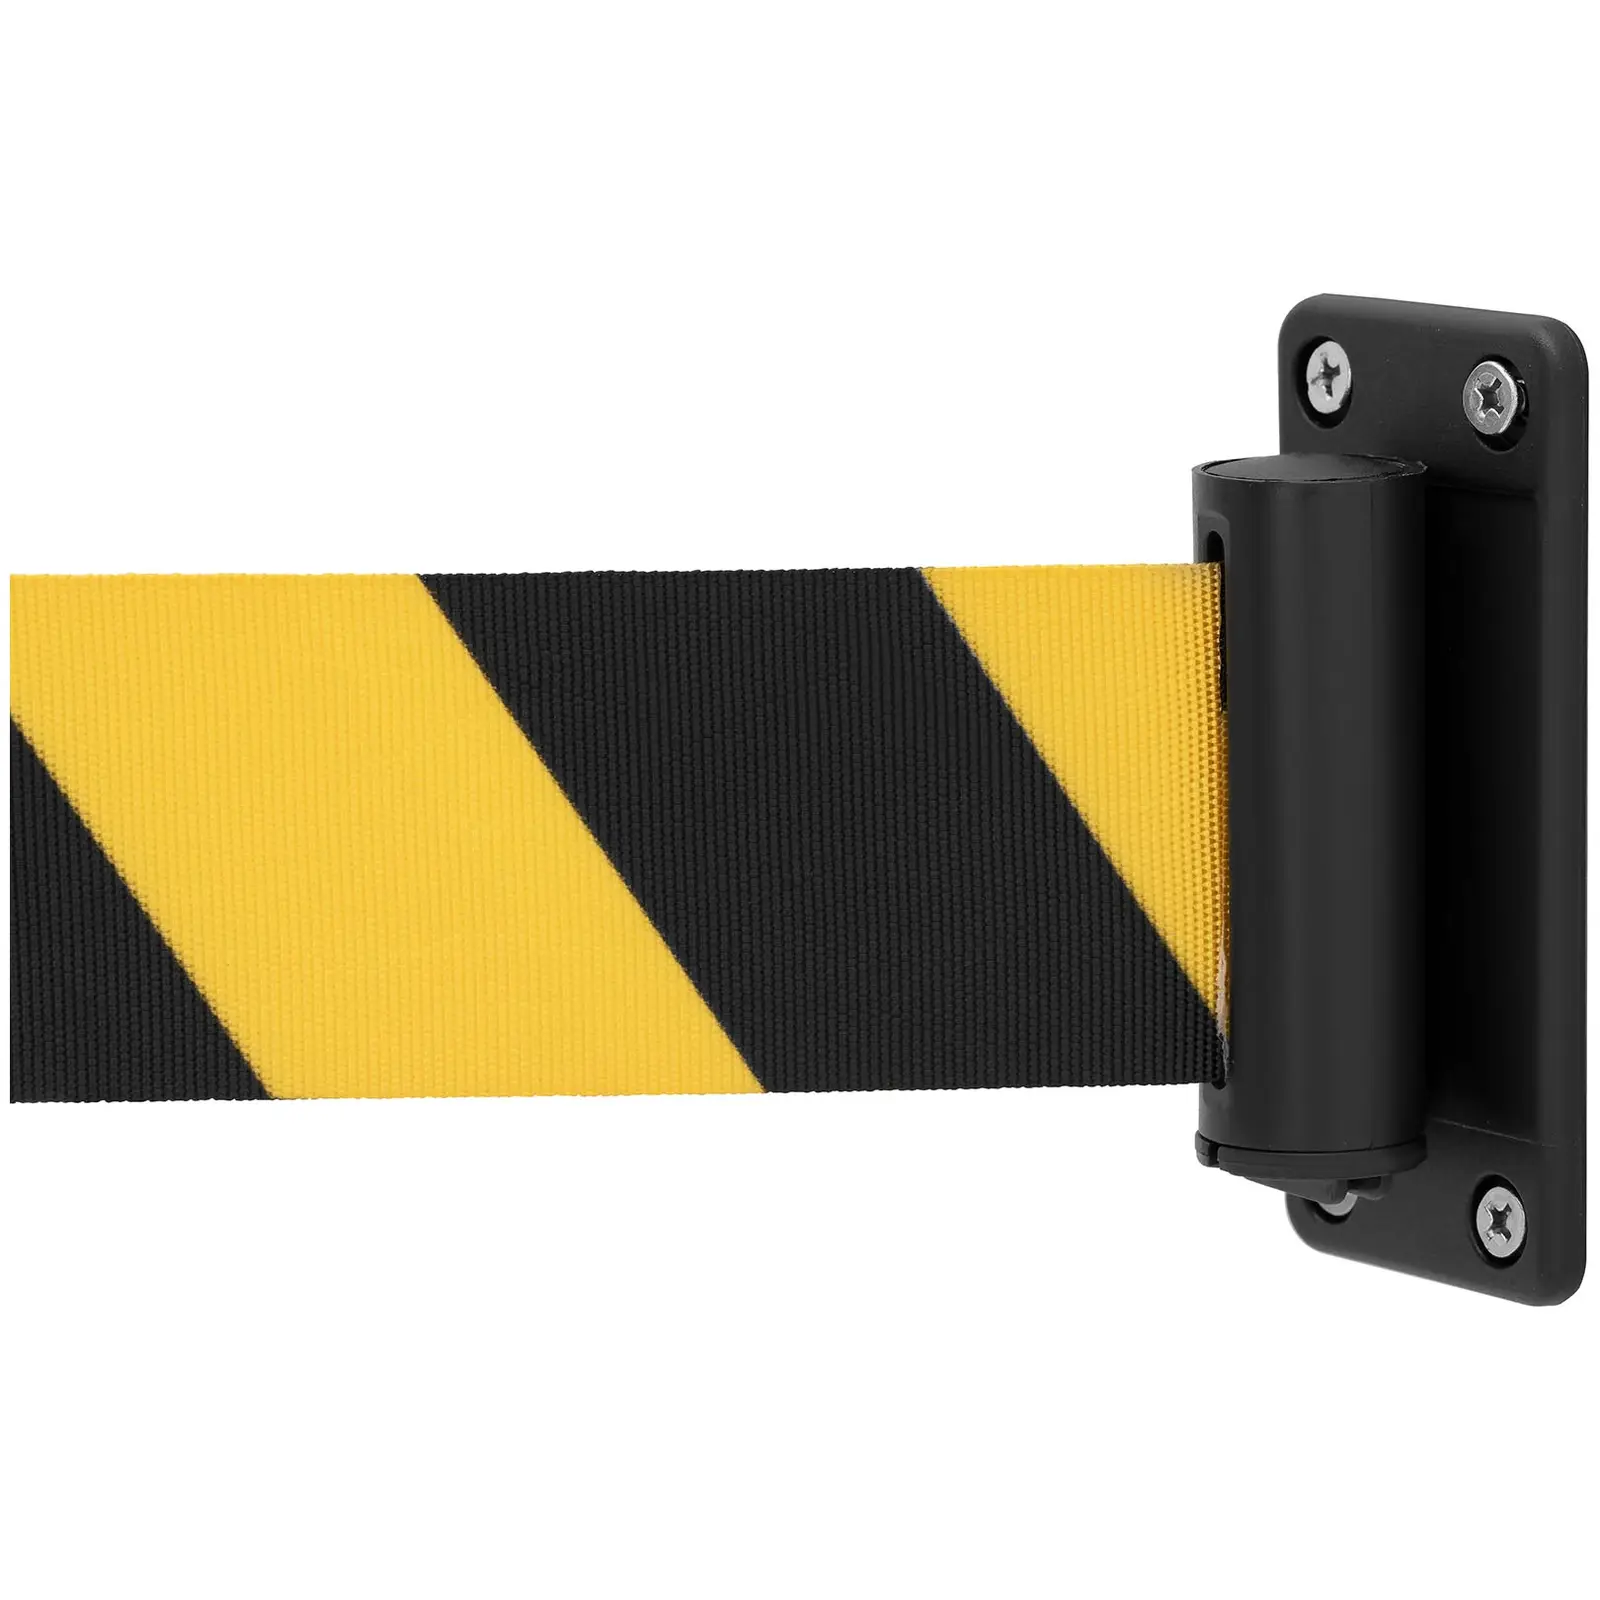 Taśma ostrzegawcza z kasetą z tworzywa sztucznego - żółto-czarna - 2 m